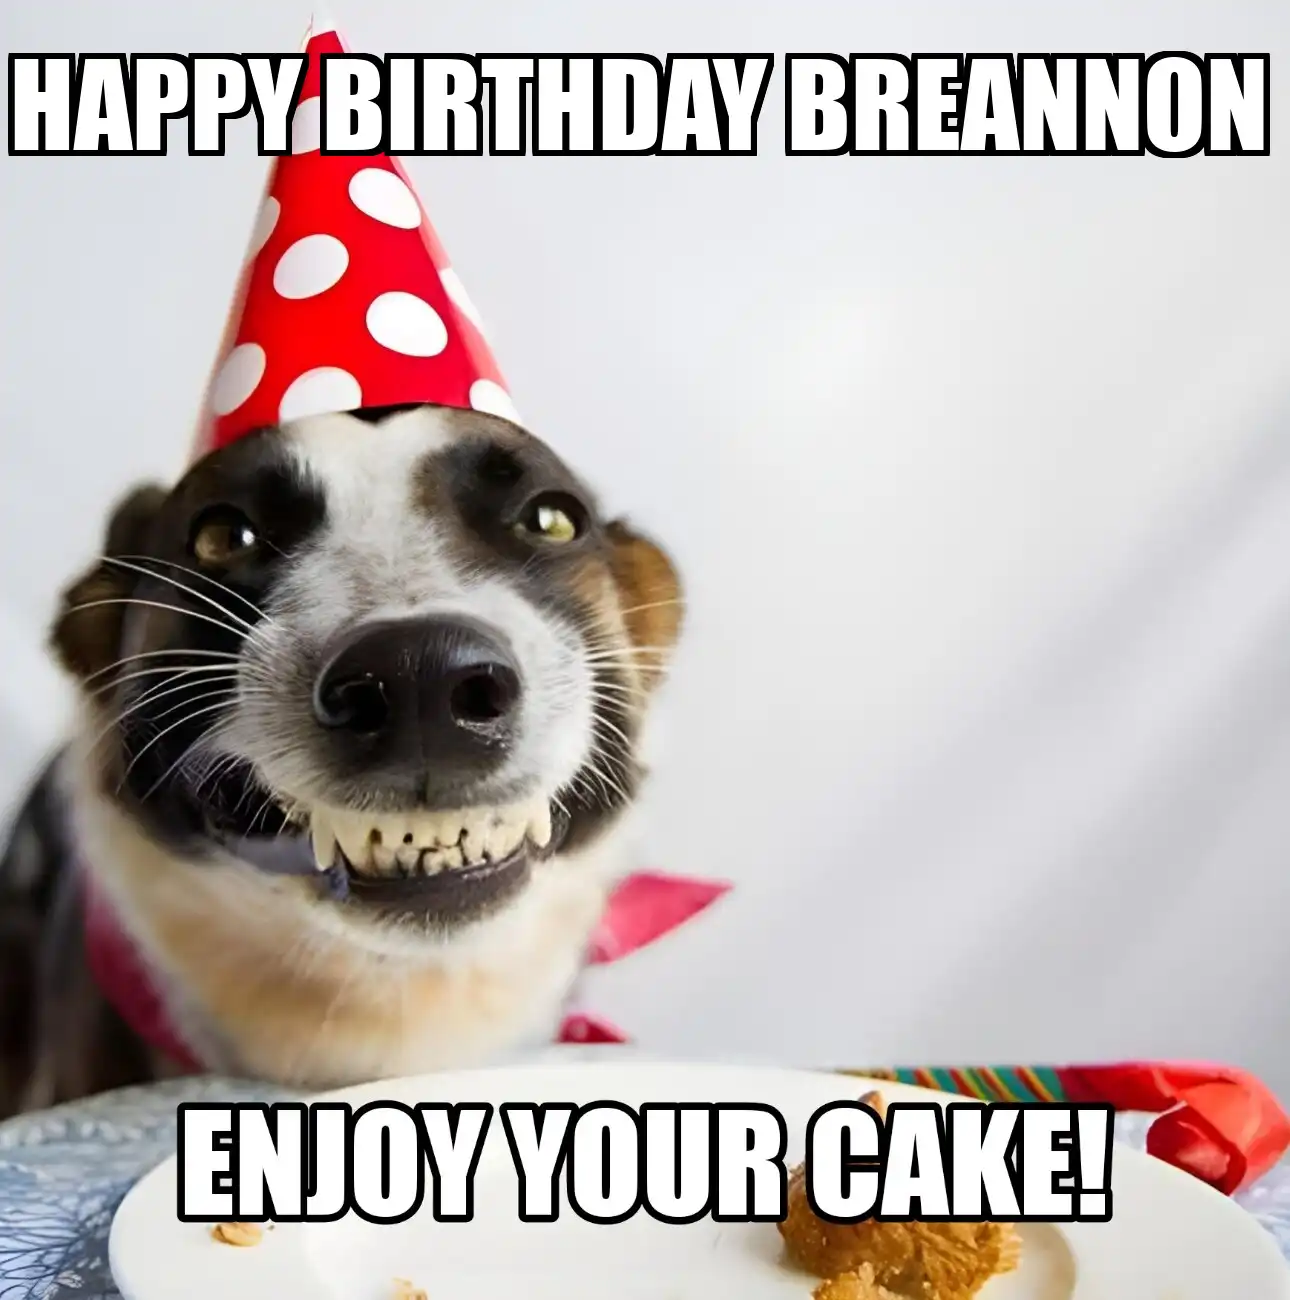 Happy Birthday Breannon Enjoy Your Cake Dog Meme